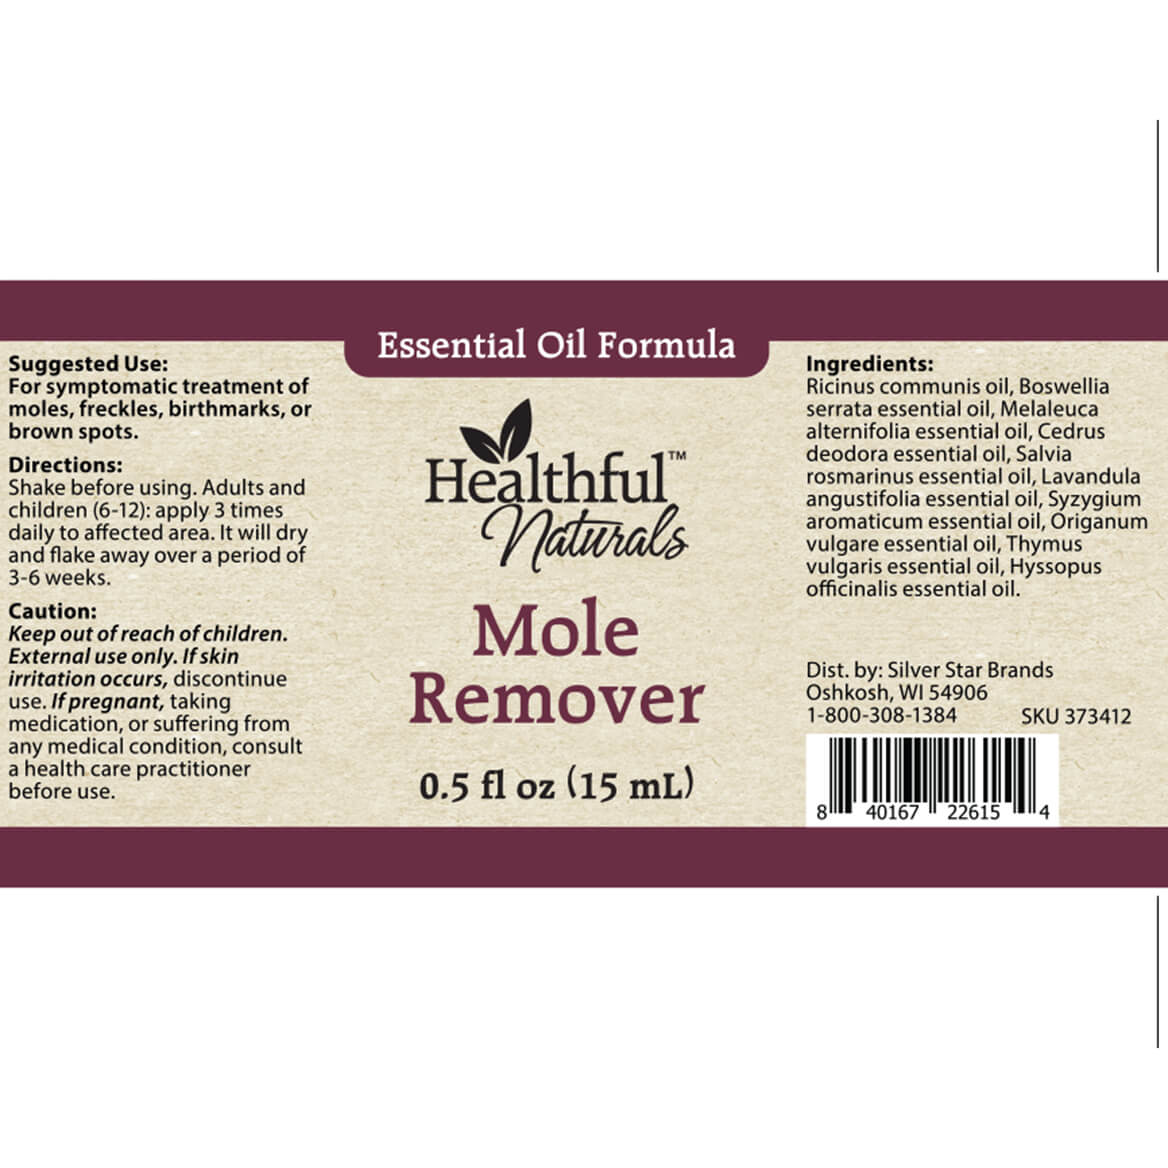 Fox Valley Traders HealthfulTM Naturals Mole Remover 